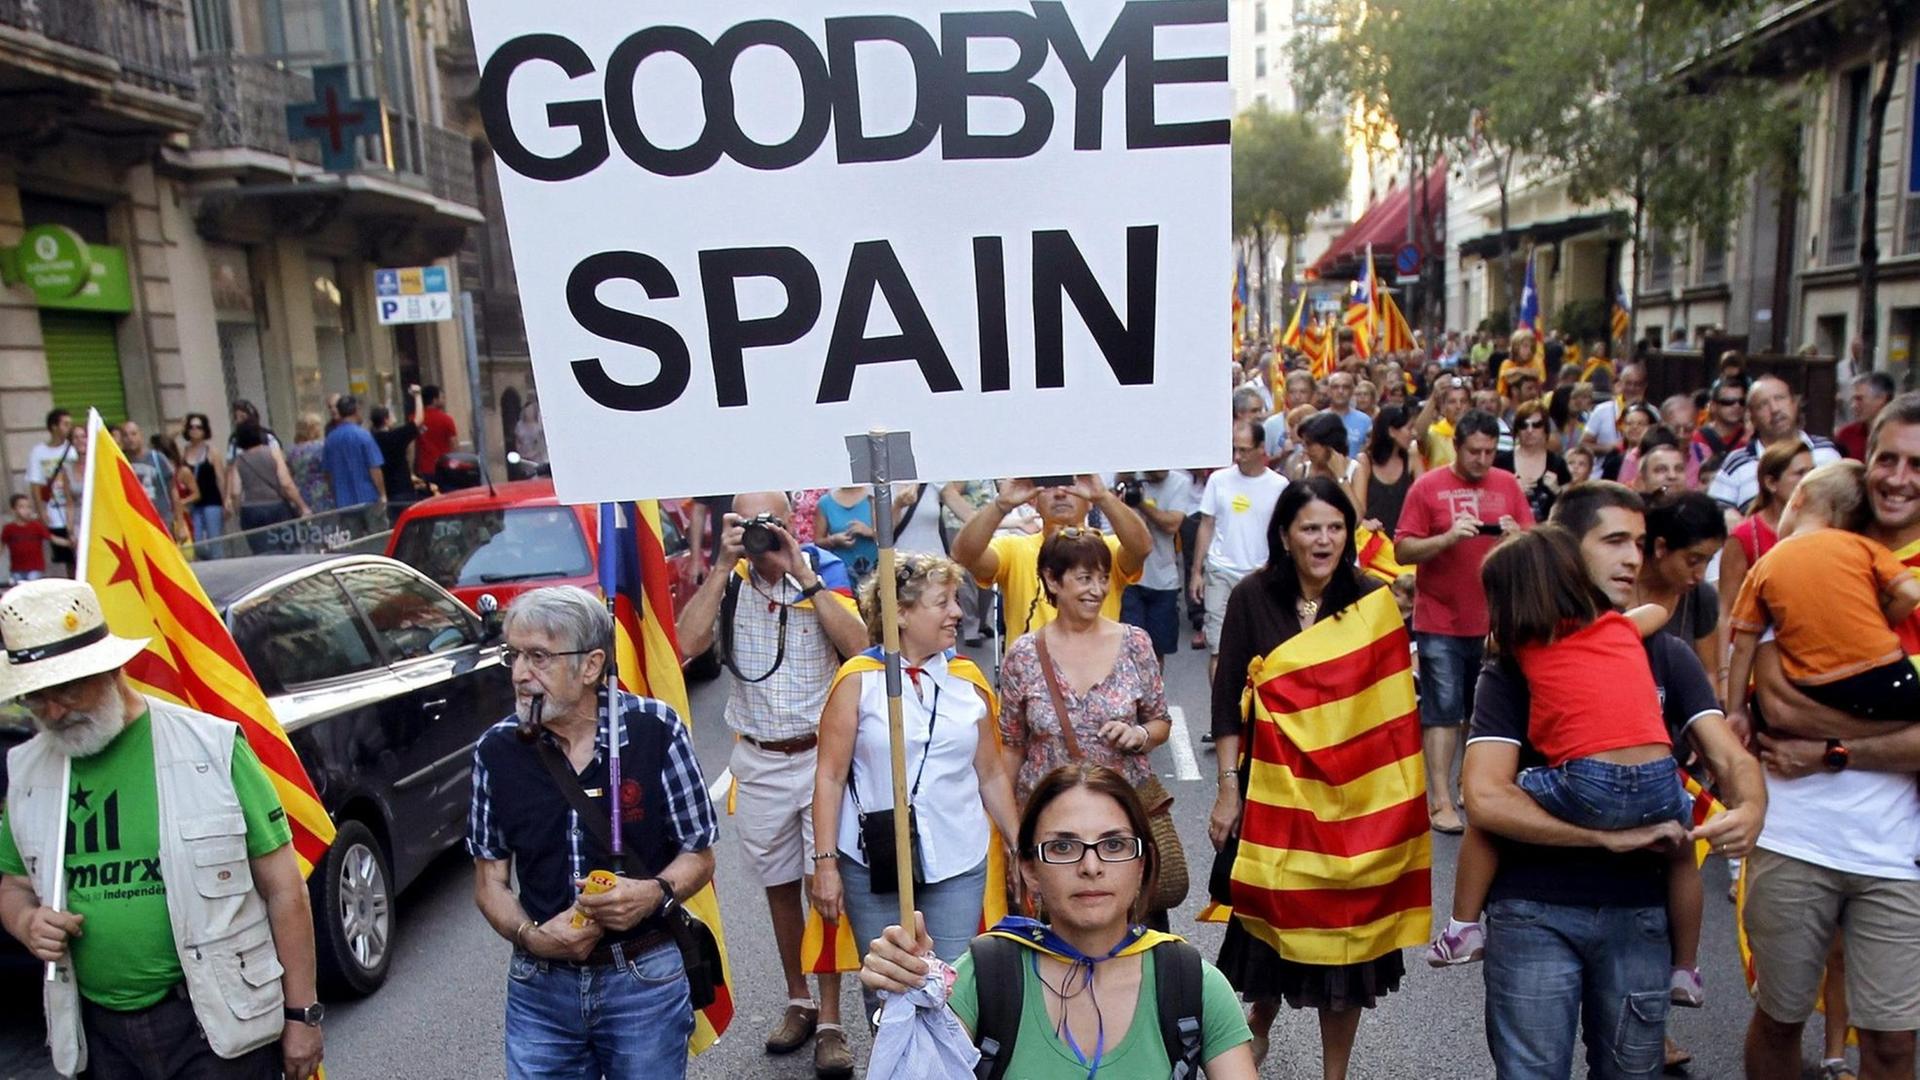 Demonstranten mit den katalanischen Farben auf einer Straße. Auf einem Schild steht "Goodbye Spain".